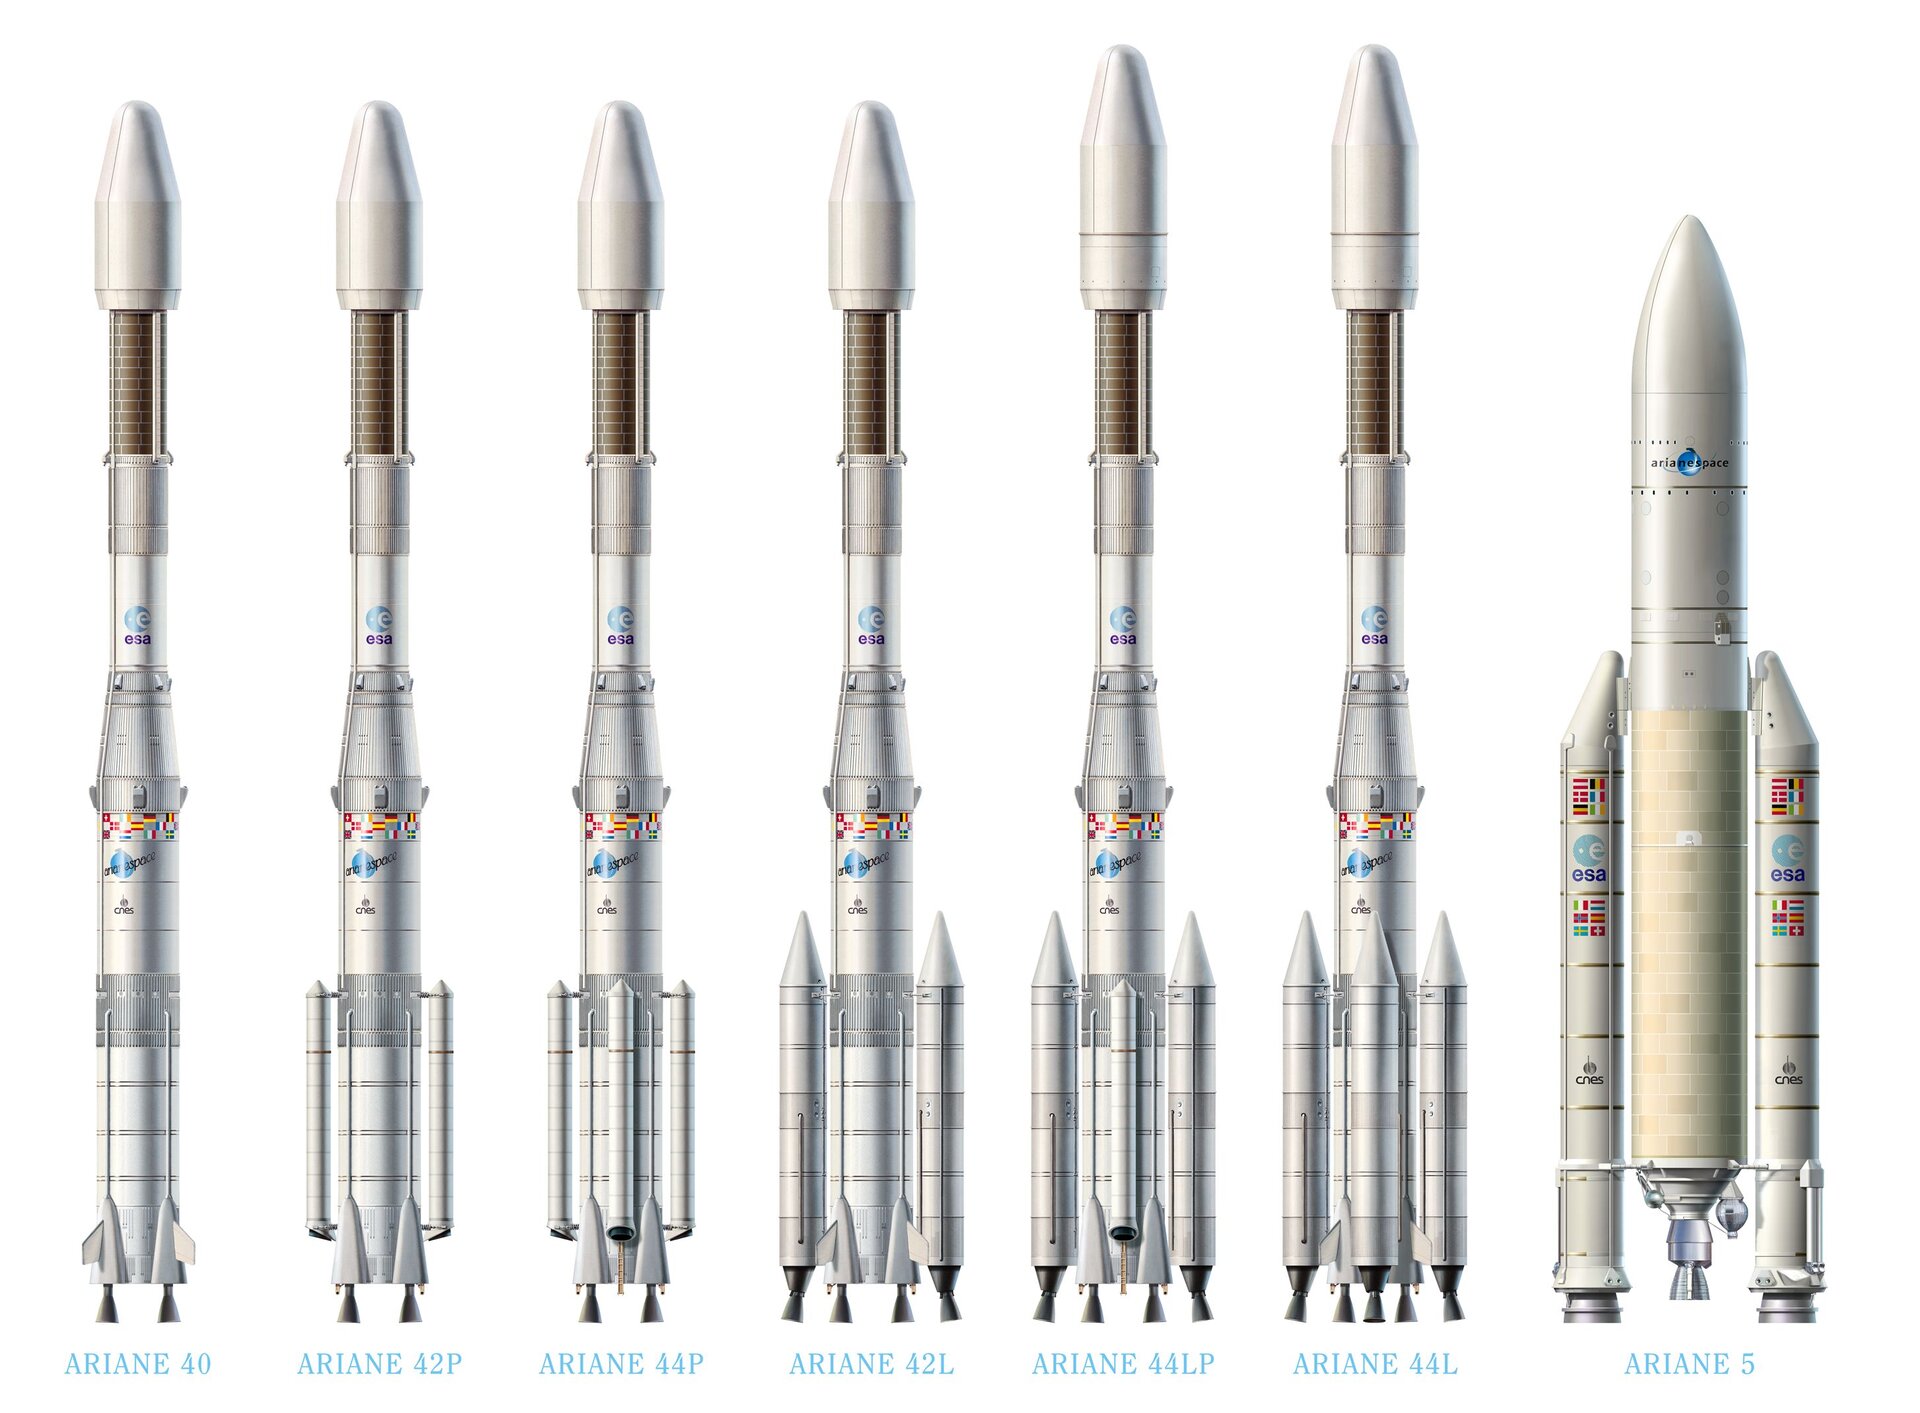 Ariane 4 and Ariane 5 launchers artist view